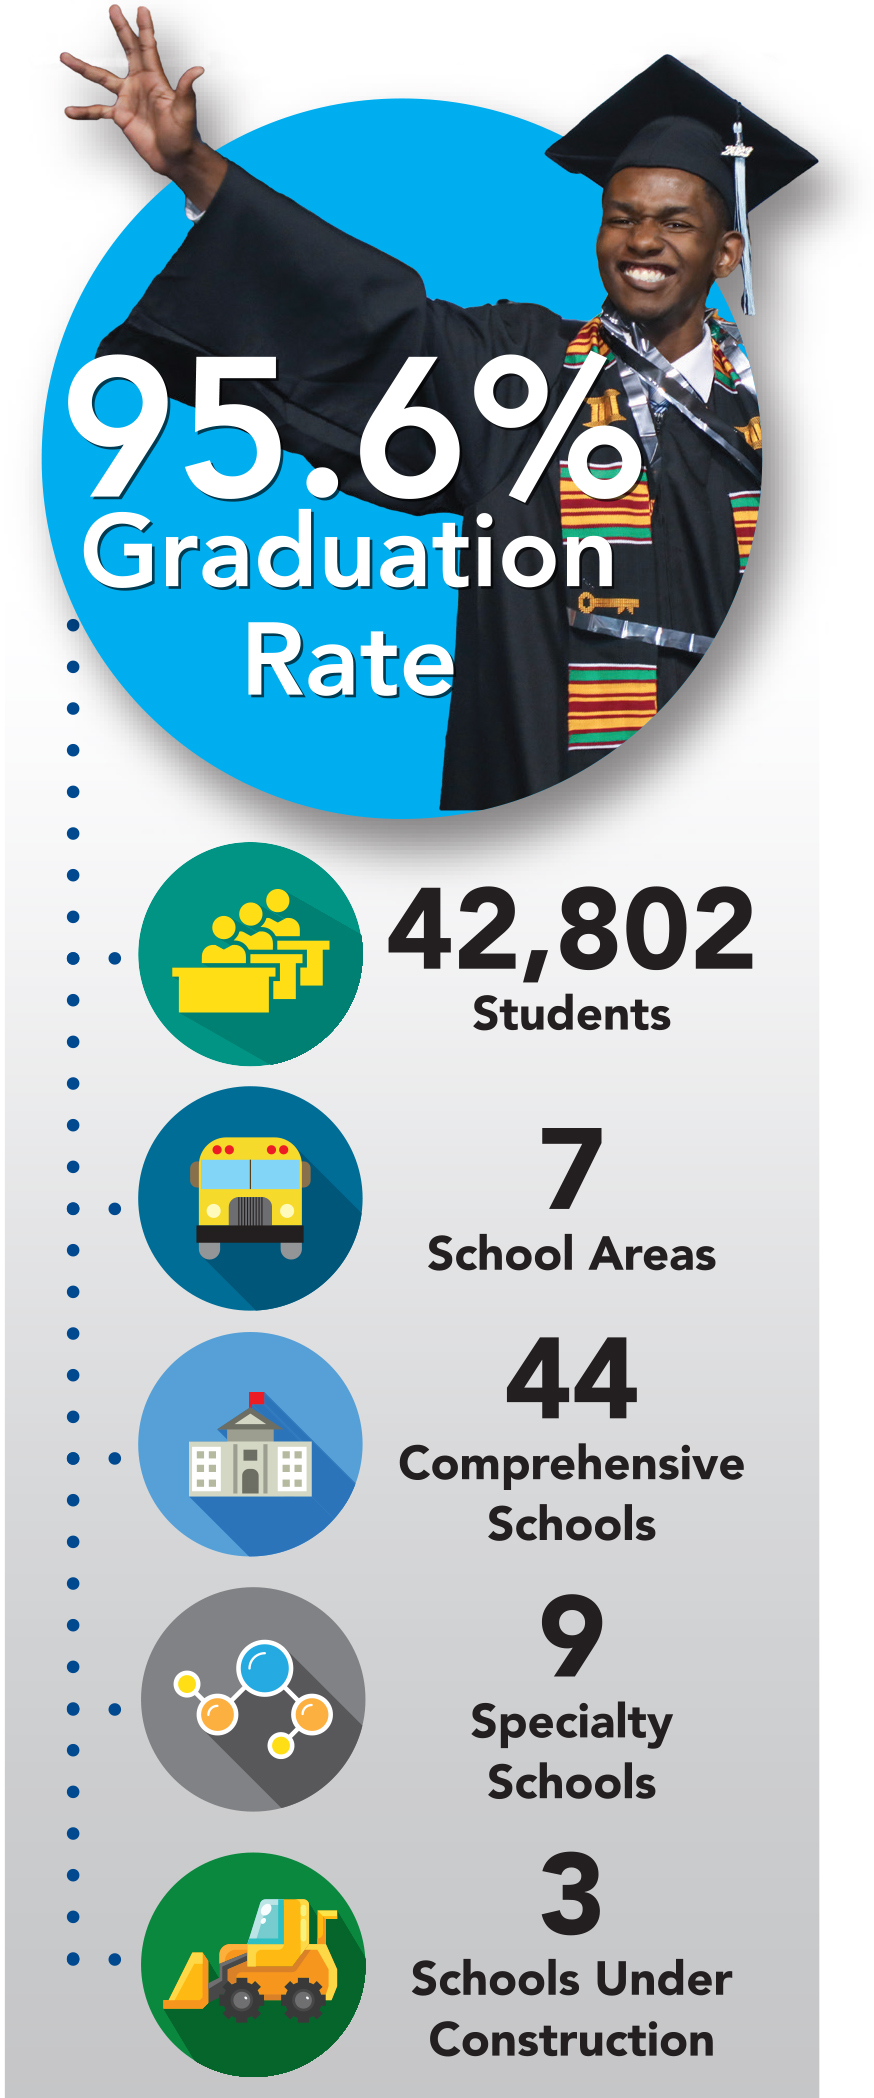 95.6% graduation rate; 42,802 students; 7 areas; 44 comprehensive schools; 9 specialty schools; 3 schools under construction